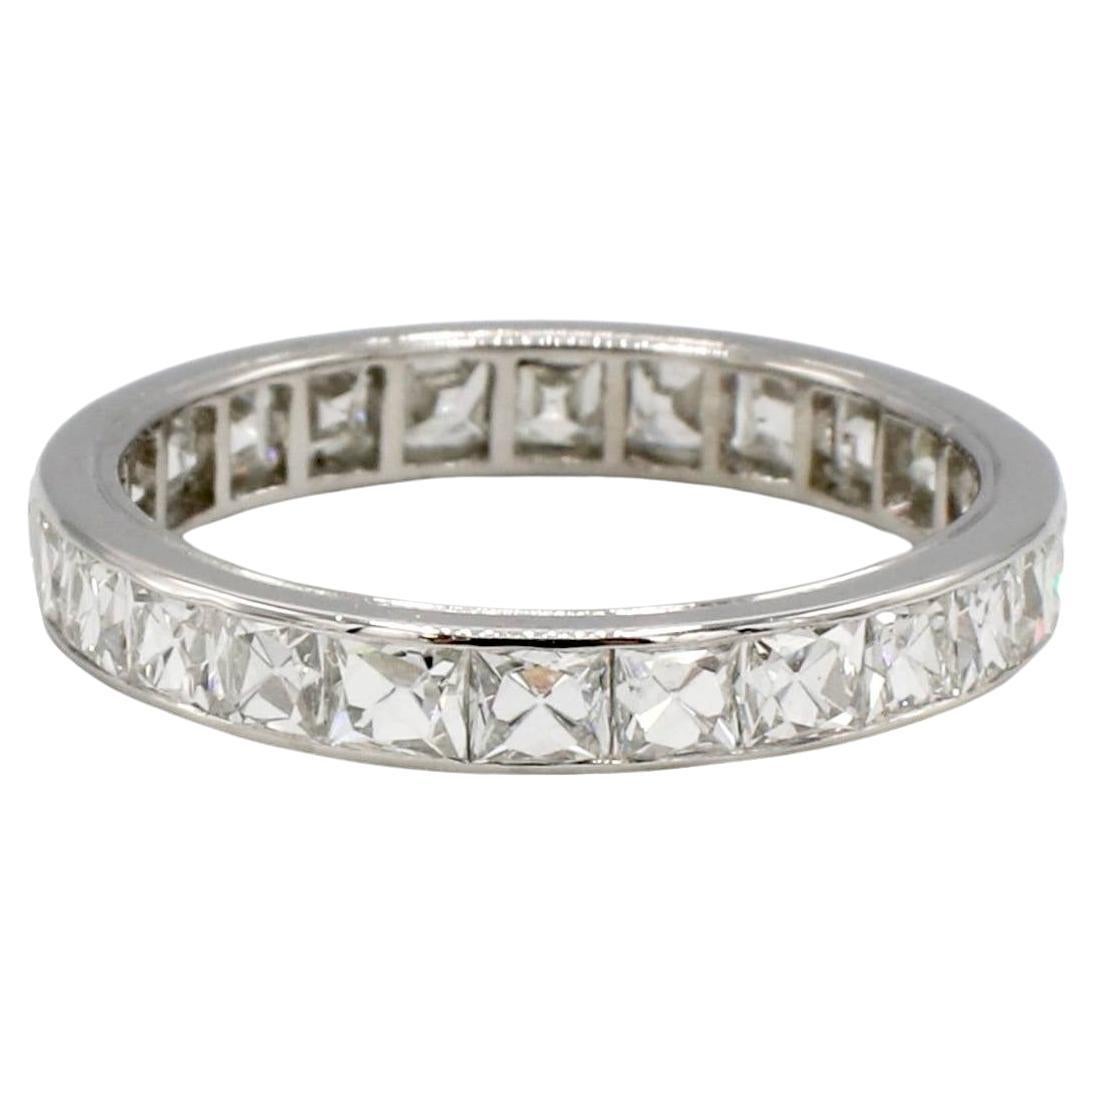 Platin French Cut 2,50 Karat Naturdiamant Eternity Band Ring 
Metall:l Platin
Diamanten: 2,50 CTW French Cut F-G VS natürliche Diamanten
Größe: 7 (US)
Breite: 3.2 mm
Gewicht: 2.95 Gramm
